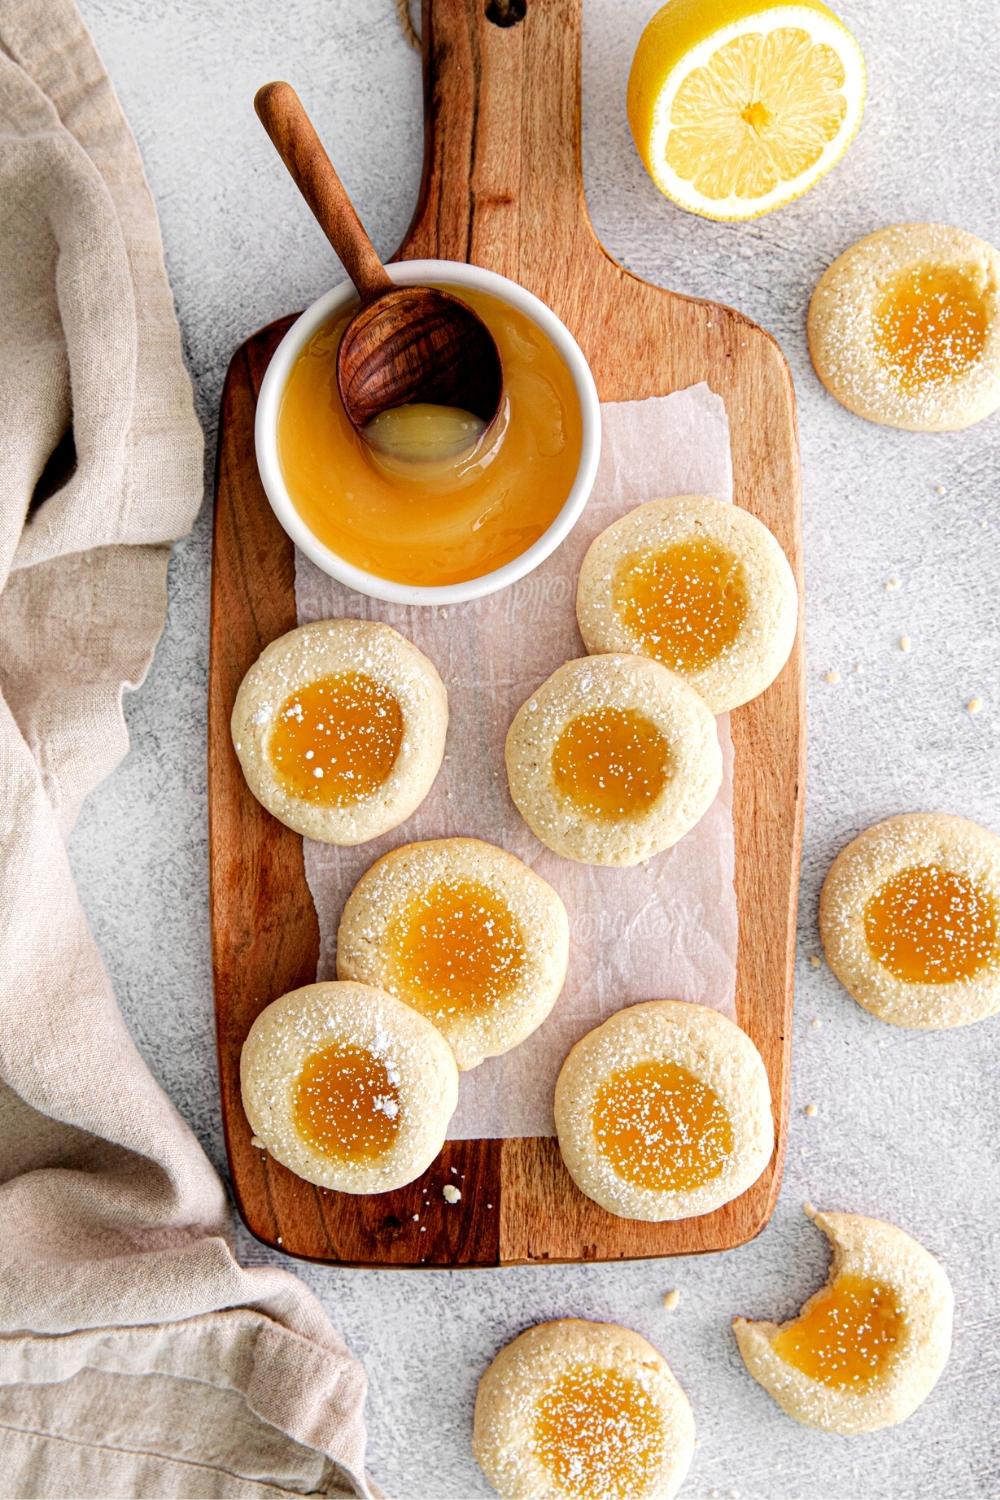 Ten lemon Curd Cookies sprinkled with powdered sugar.